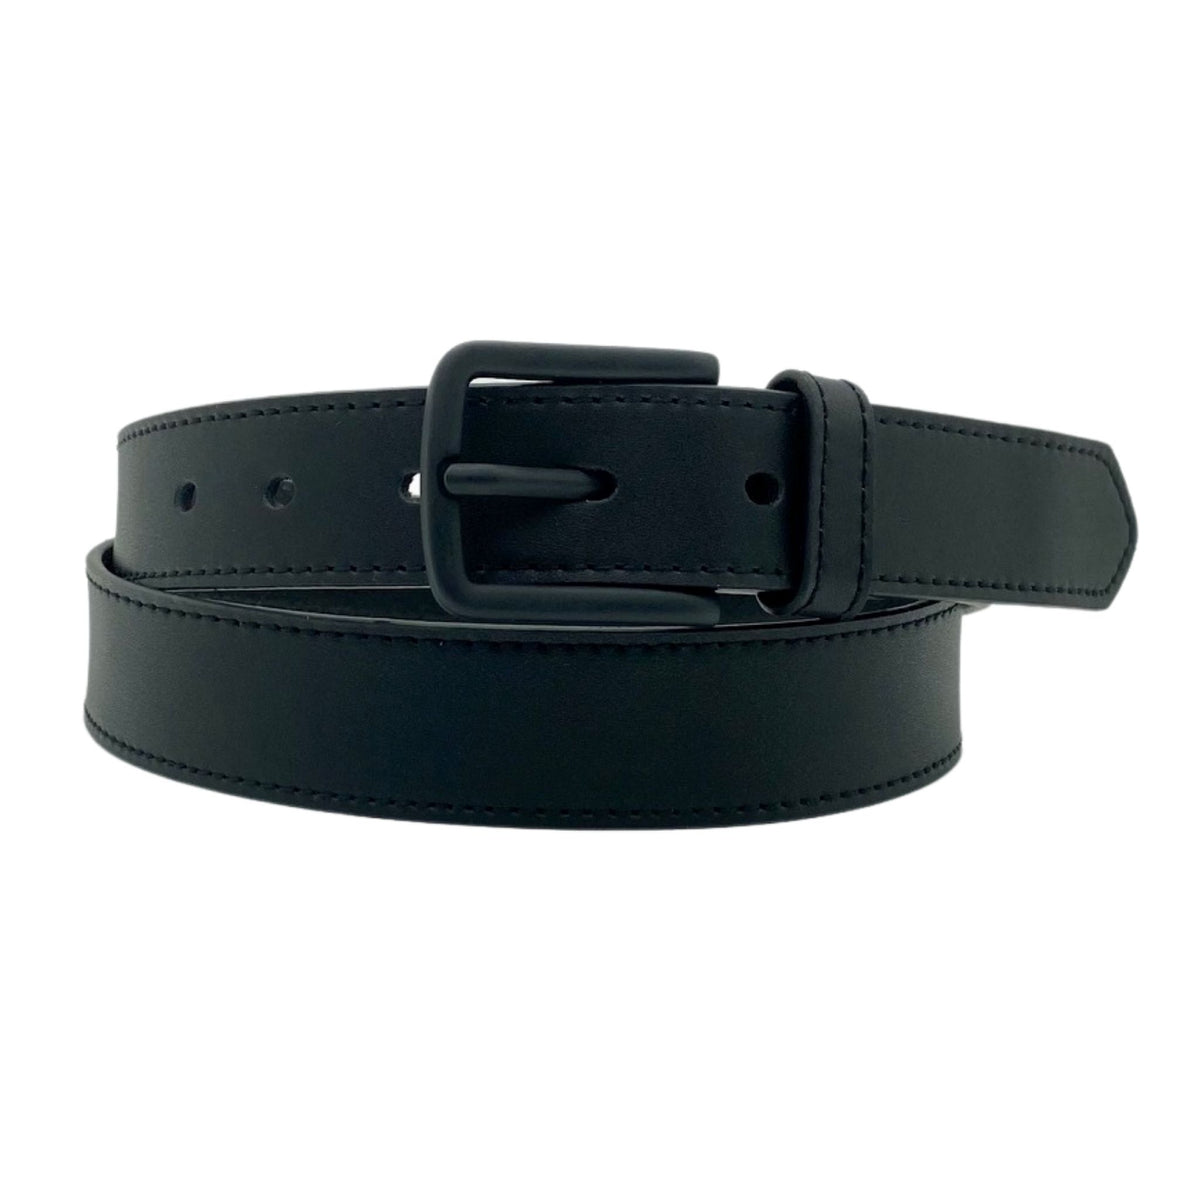 DANIEL Men's Black Leather Belt | BeltnBags Australia